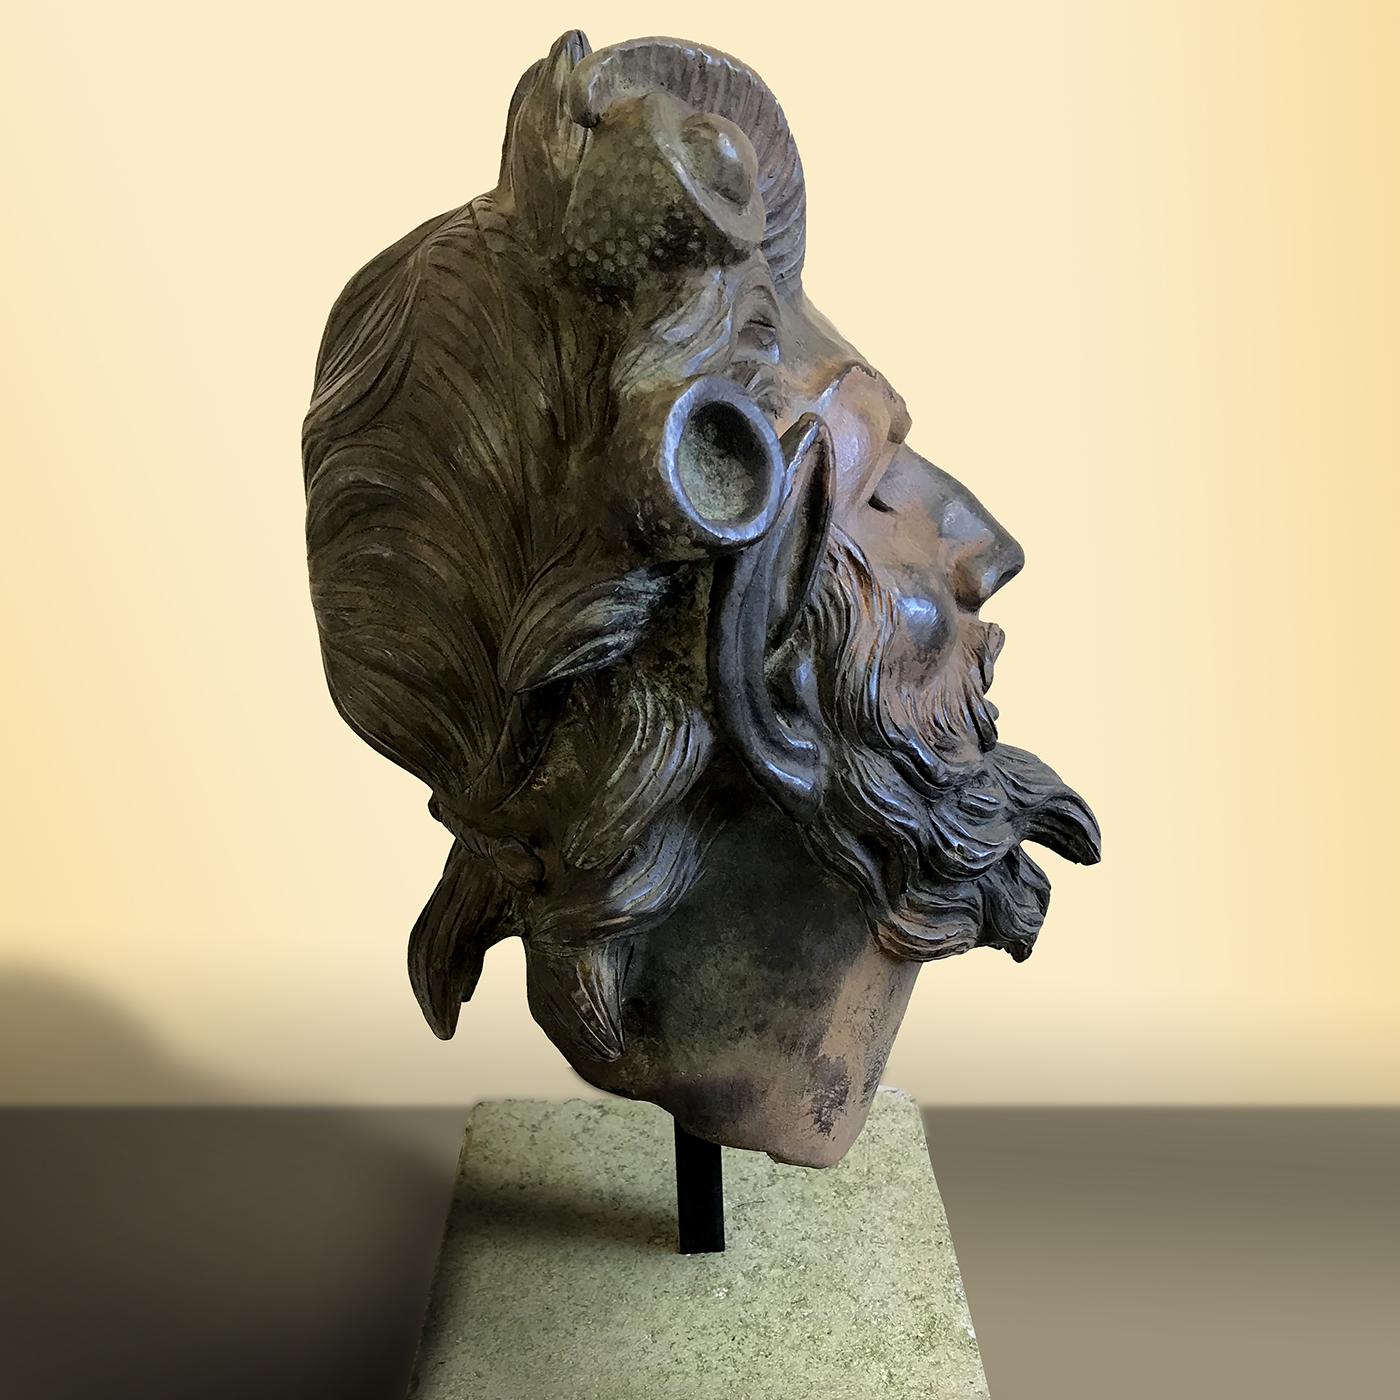 Dieses exquisite Stück stellt den Kopf eines bärtigen Fauns dar, der mit seinen Ziegenhörnern und länglichen Ohren deutlich zu erkennen ist. Der Faun war das römische Äquivalent des altgriechischen Satyrs, ein mythologisches Wesen, das halb Mensch,